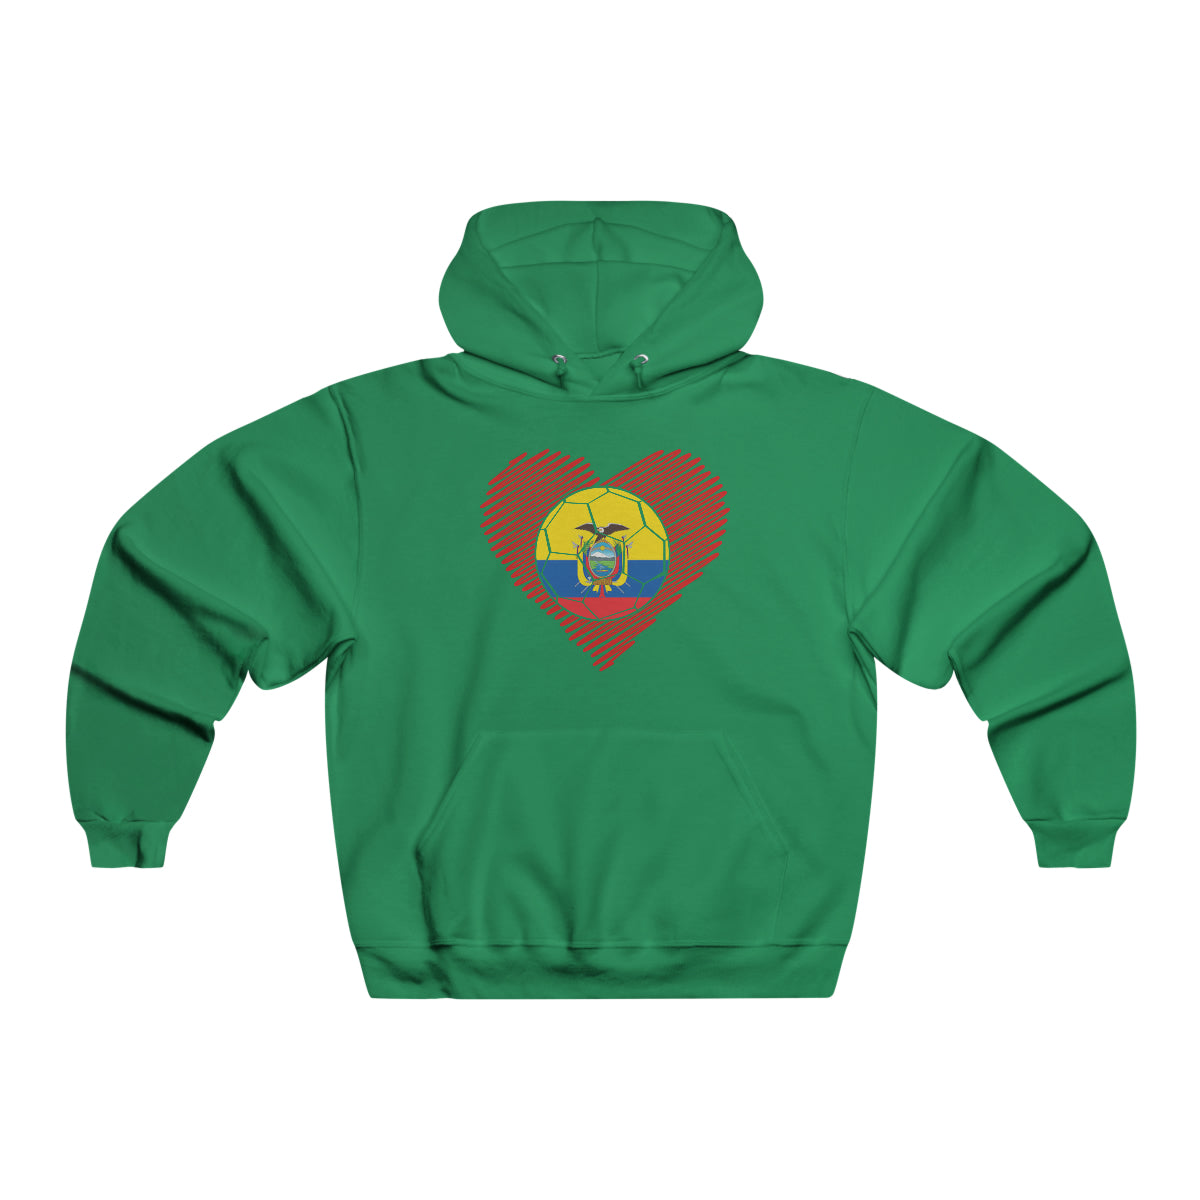 Ecuador Hooded Sweatshirt